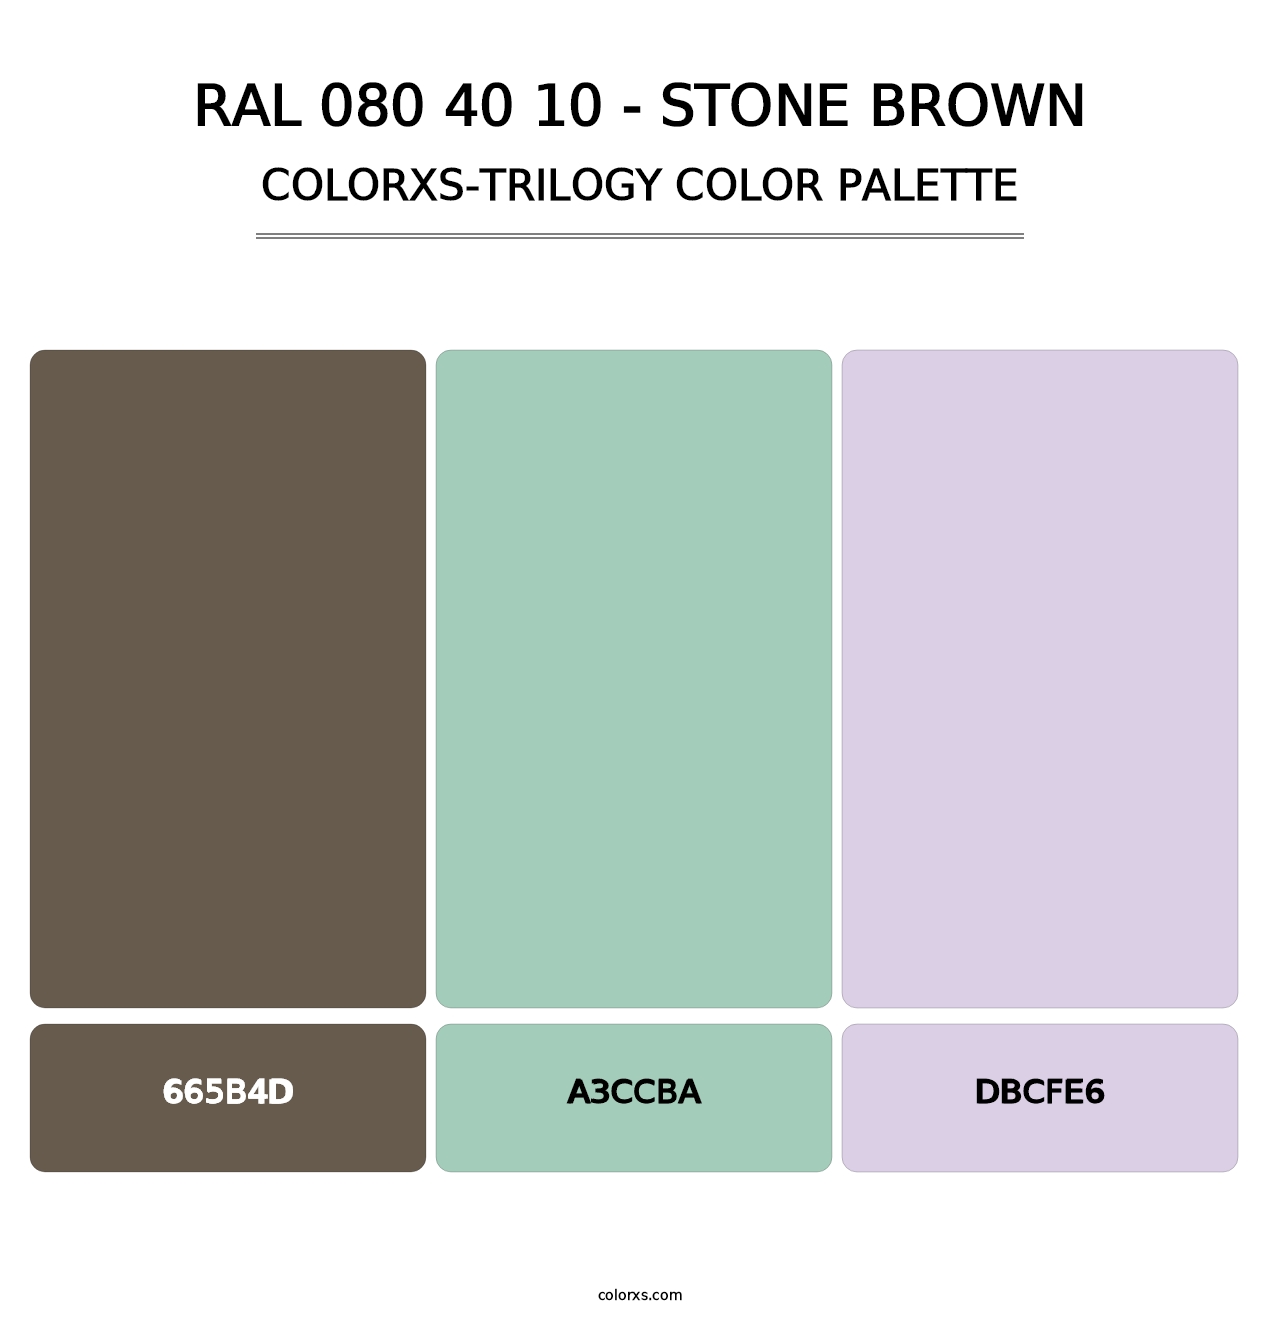 RAL 080 40 10 - Stone Brown - Colorxs Trilogy Palette